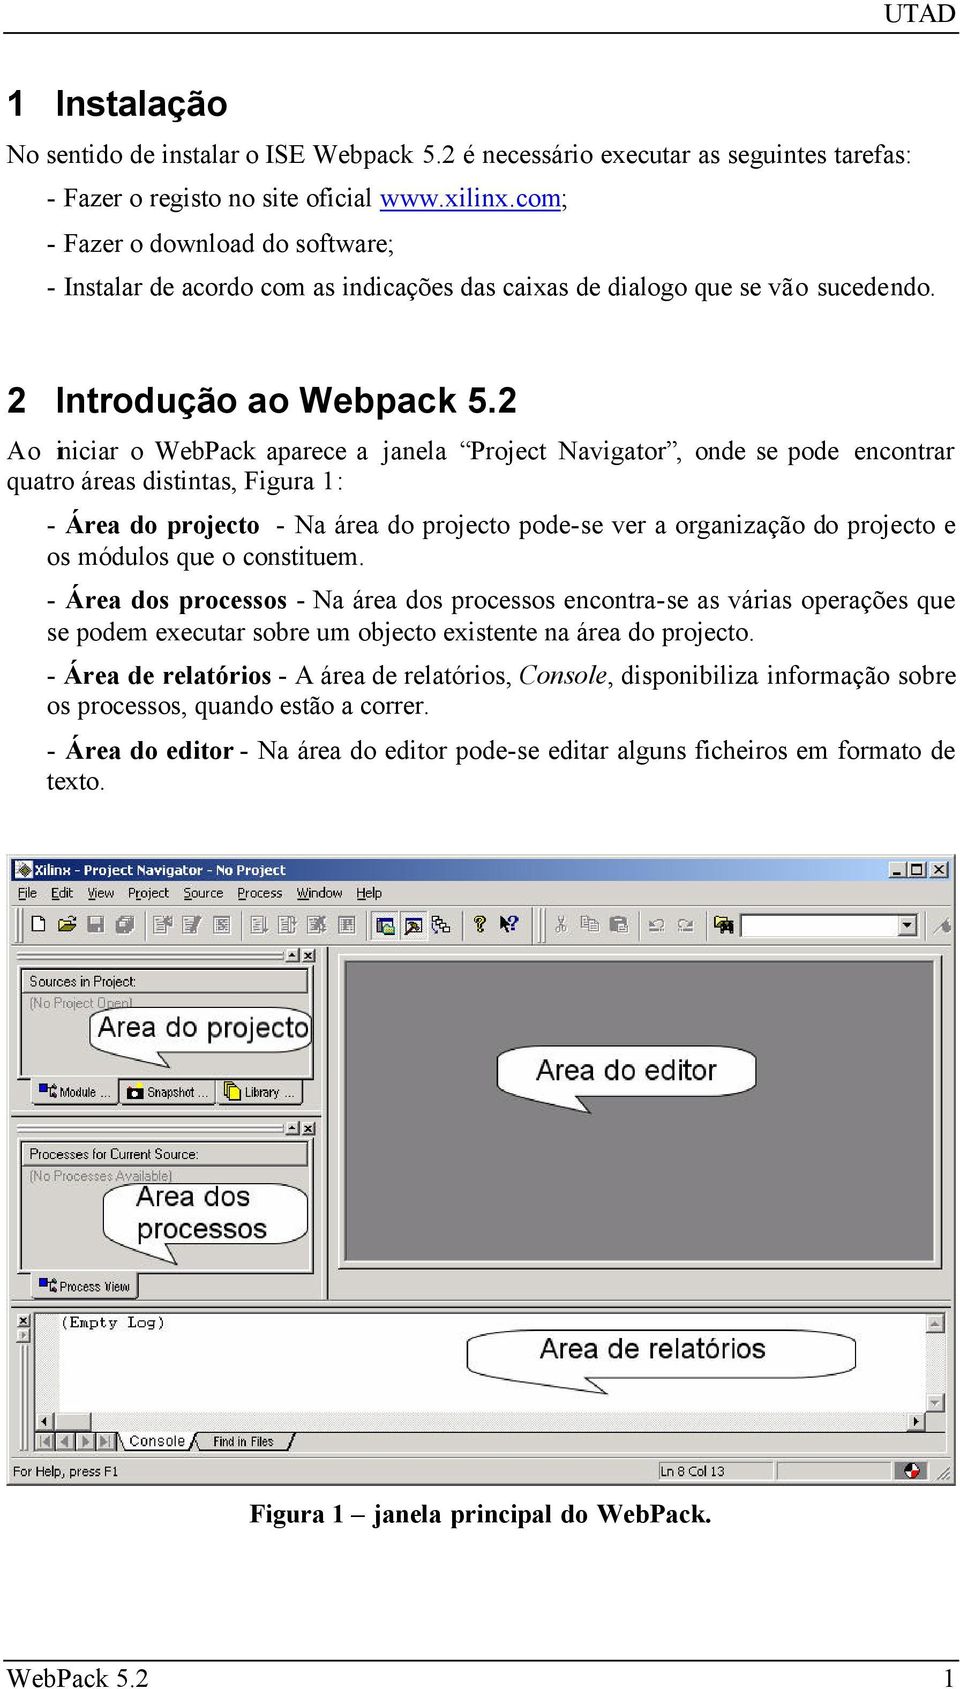 2 Ao iniciar o WebPack aparece a janela Project Navigator, onde se pode encontrar quatro áreas distintas, Figura 1: - Área do projecto - Na área do projecto pode-se ver a organização do projecto e os